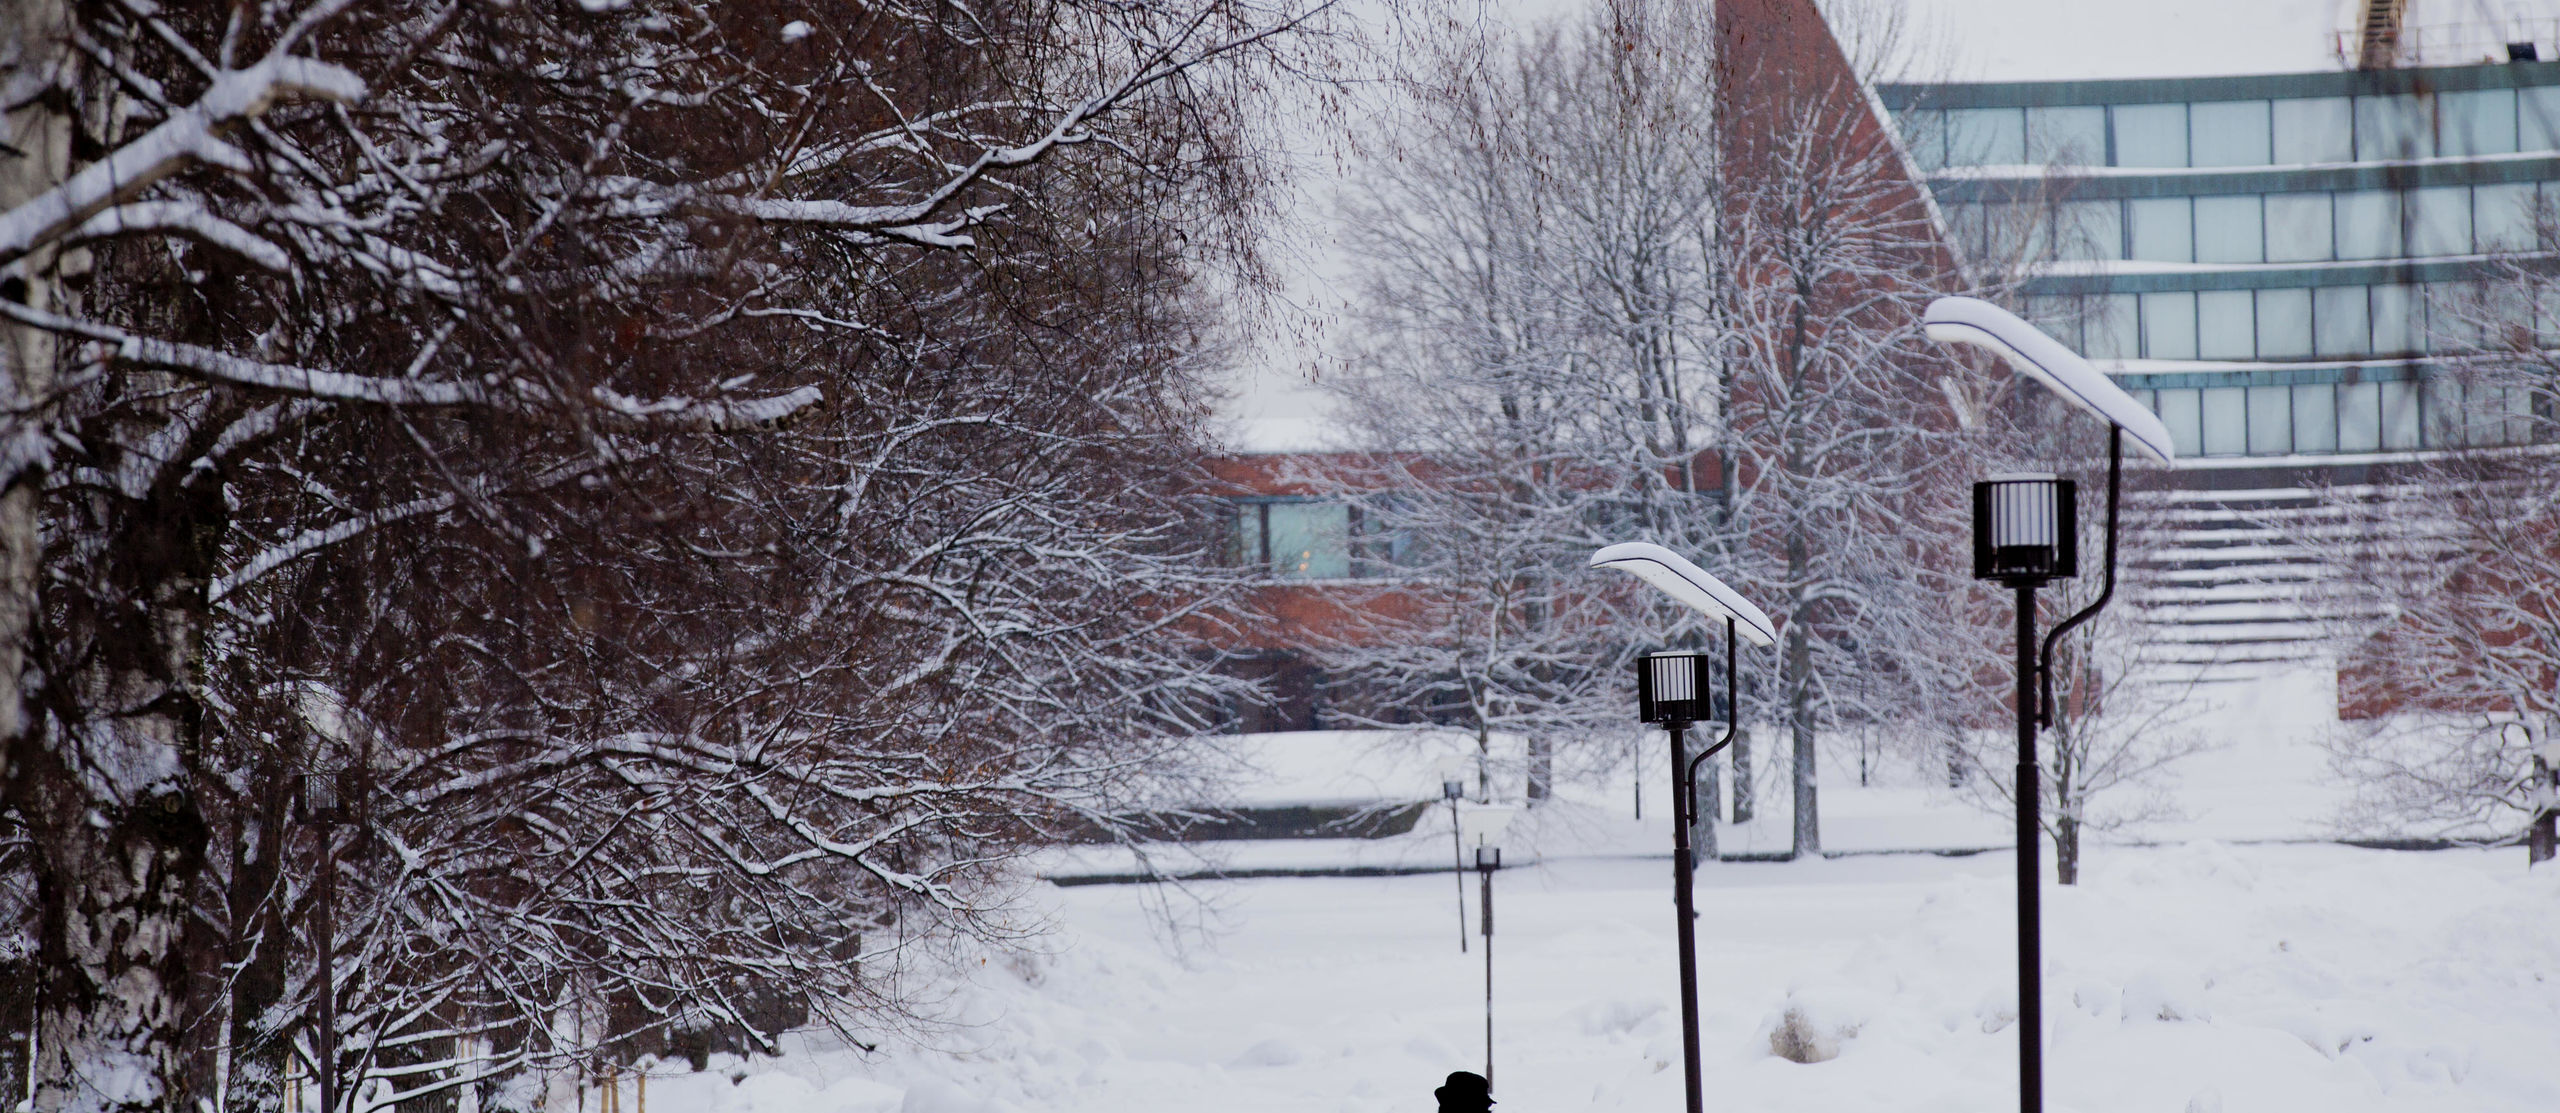 Winter campus by Mikko Raskinen